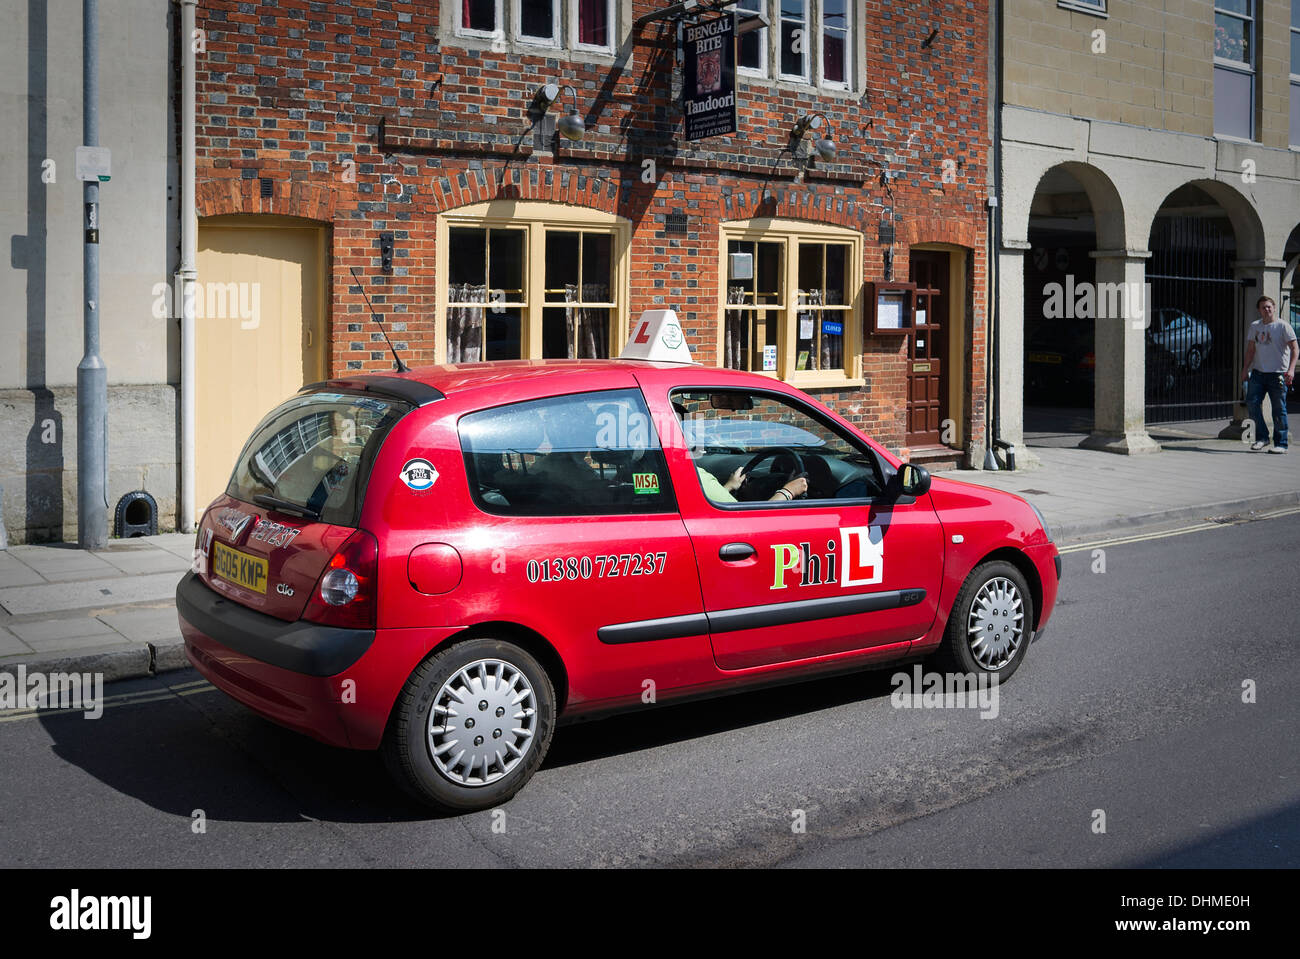 Voiture Renault Clio rouge utilisé pour l'enseignement de la conduite au Royaume-Uni Banque D'Images